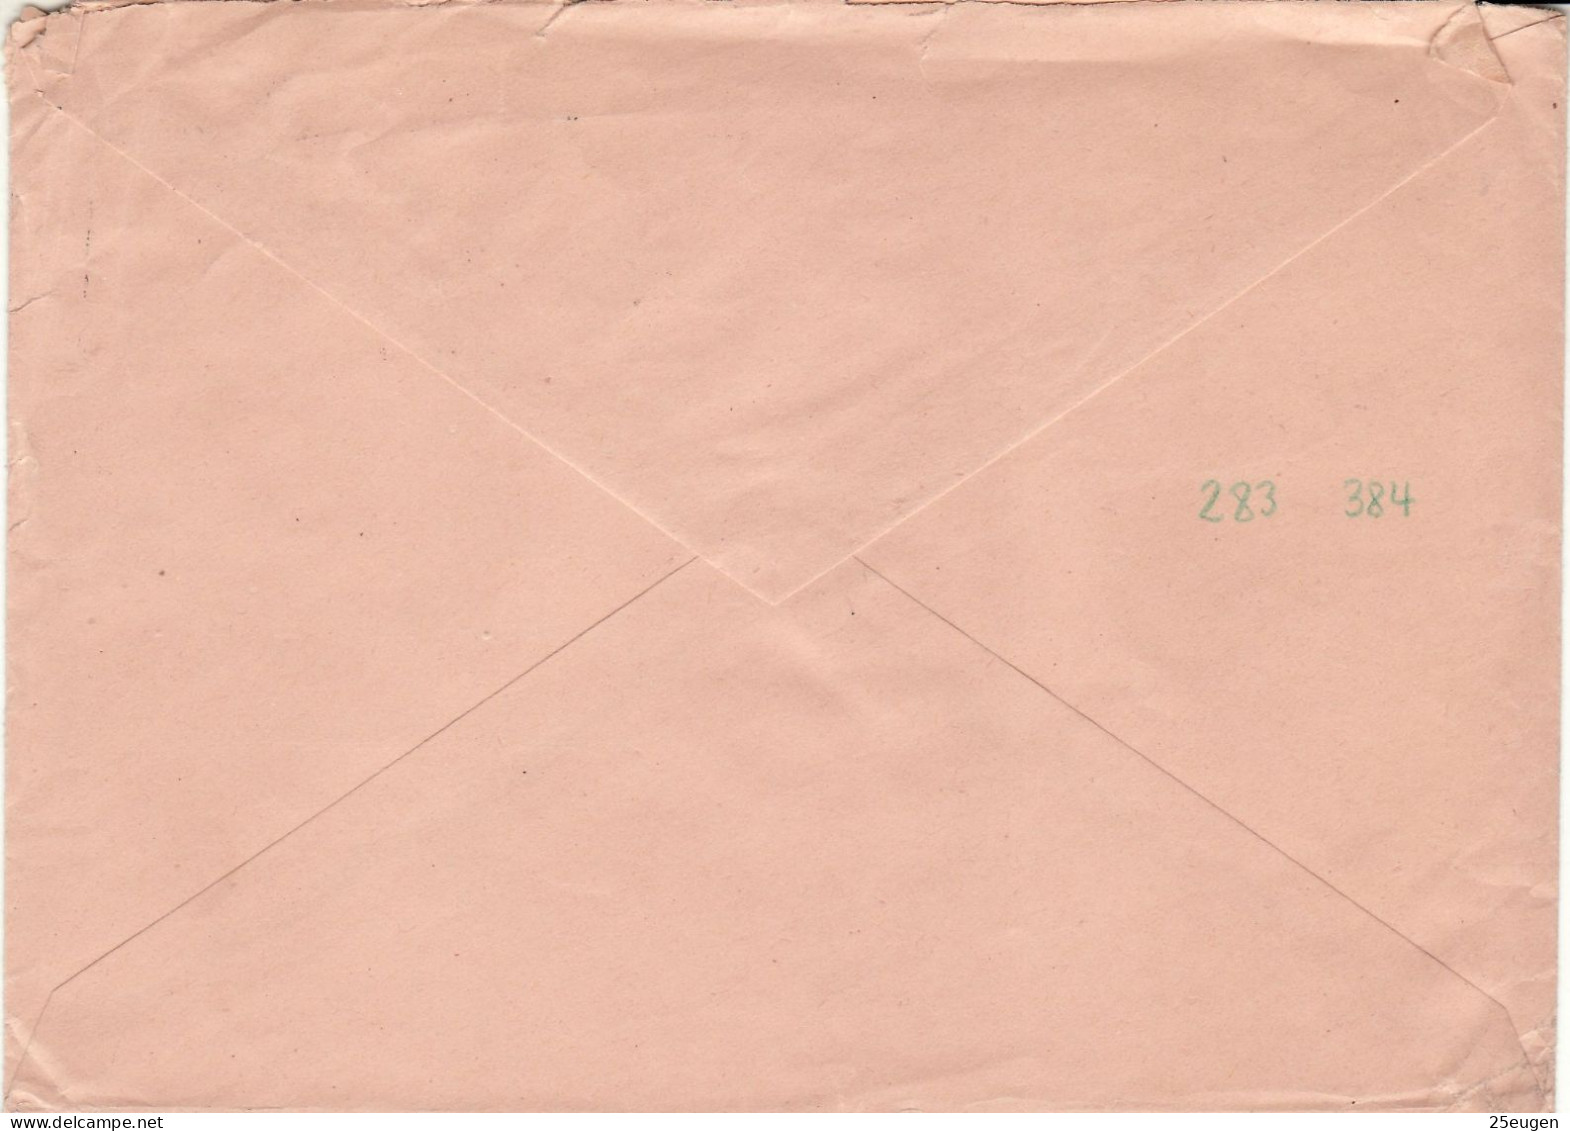 SAAR 1957  Letter Sent From SAARBRUECKEN To BUESCHFERLD - Briefe U. Dokumente